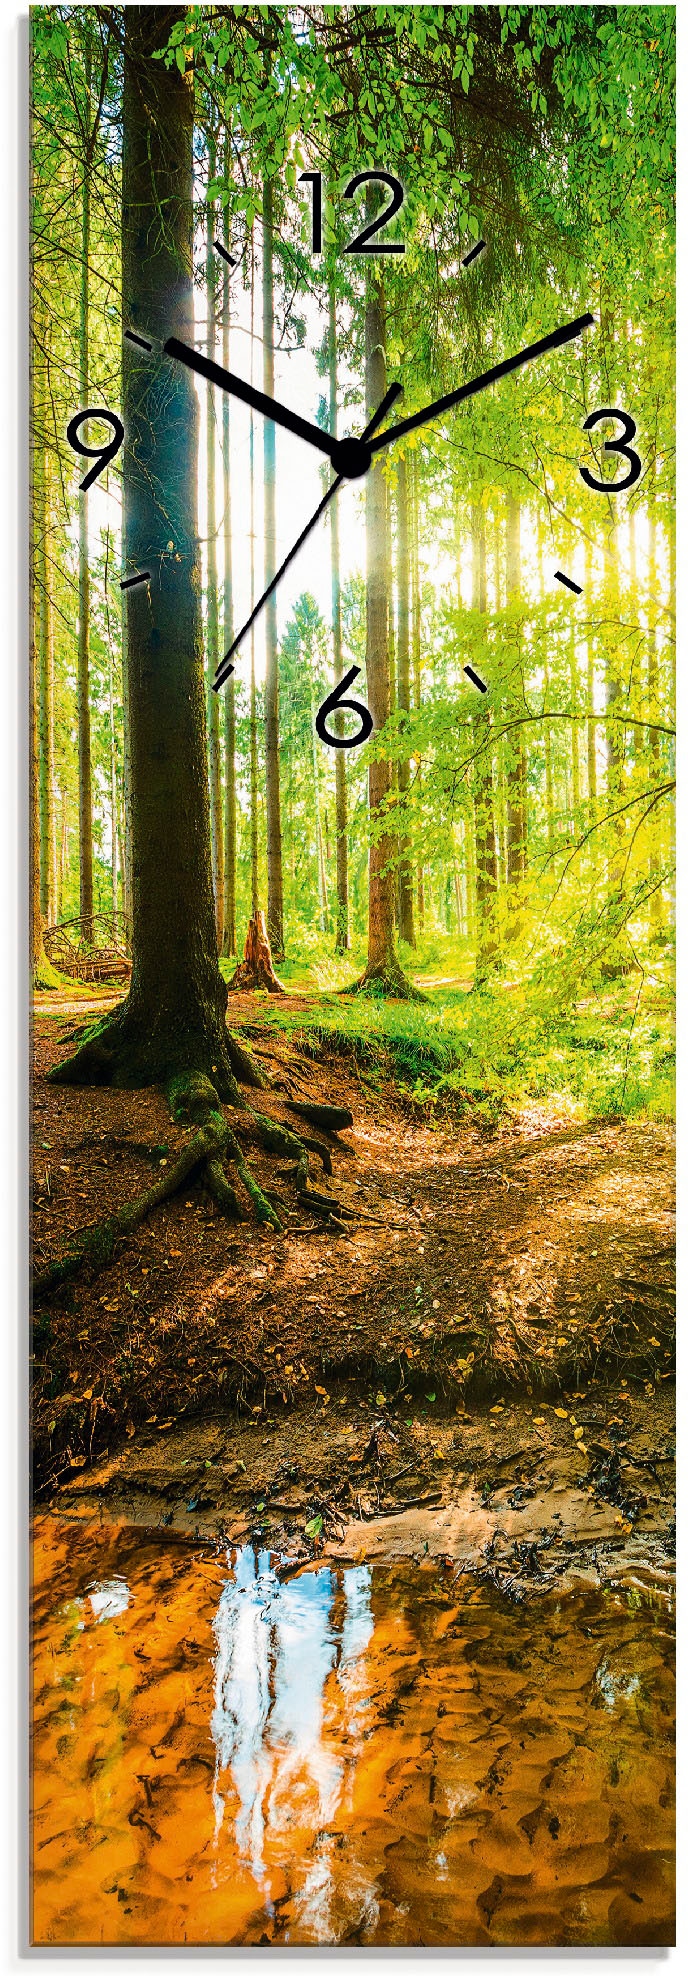 Artland Wanduhr »Wald mit Bach«, wahlweise mit Quarz- oder Funhuhrwerk, lautlos  ohne Tickgeräusche kaufen